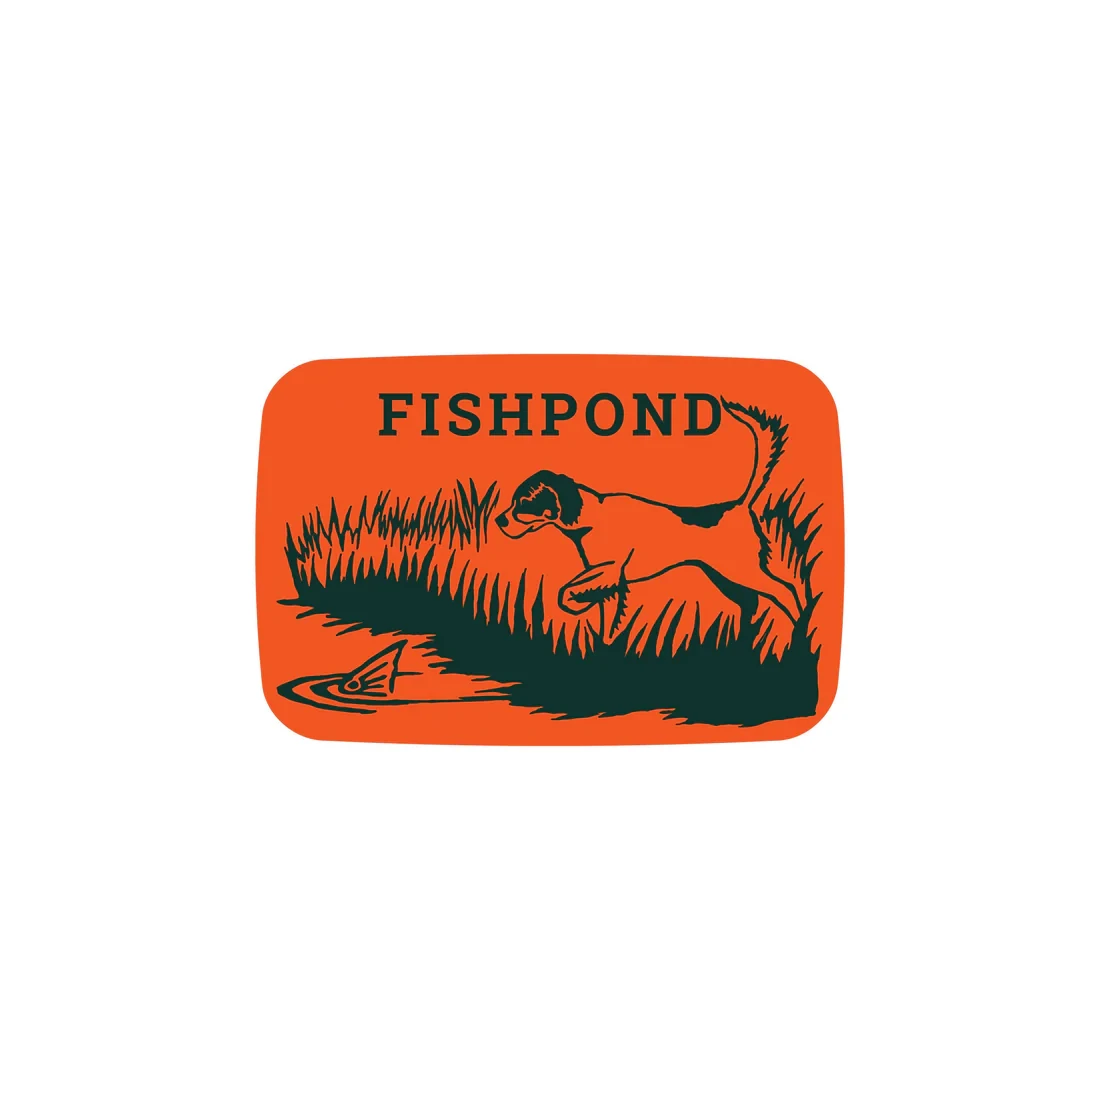 Fishpond On Point Sticker